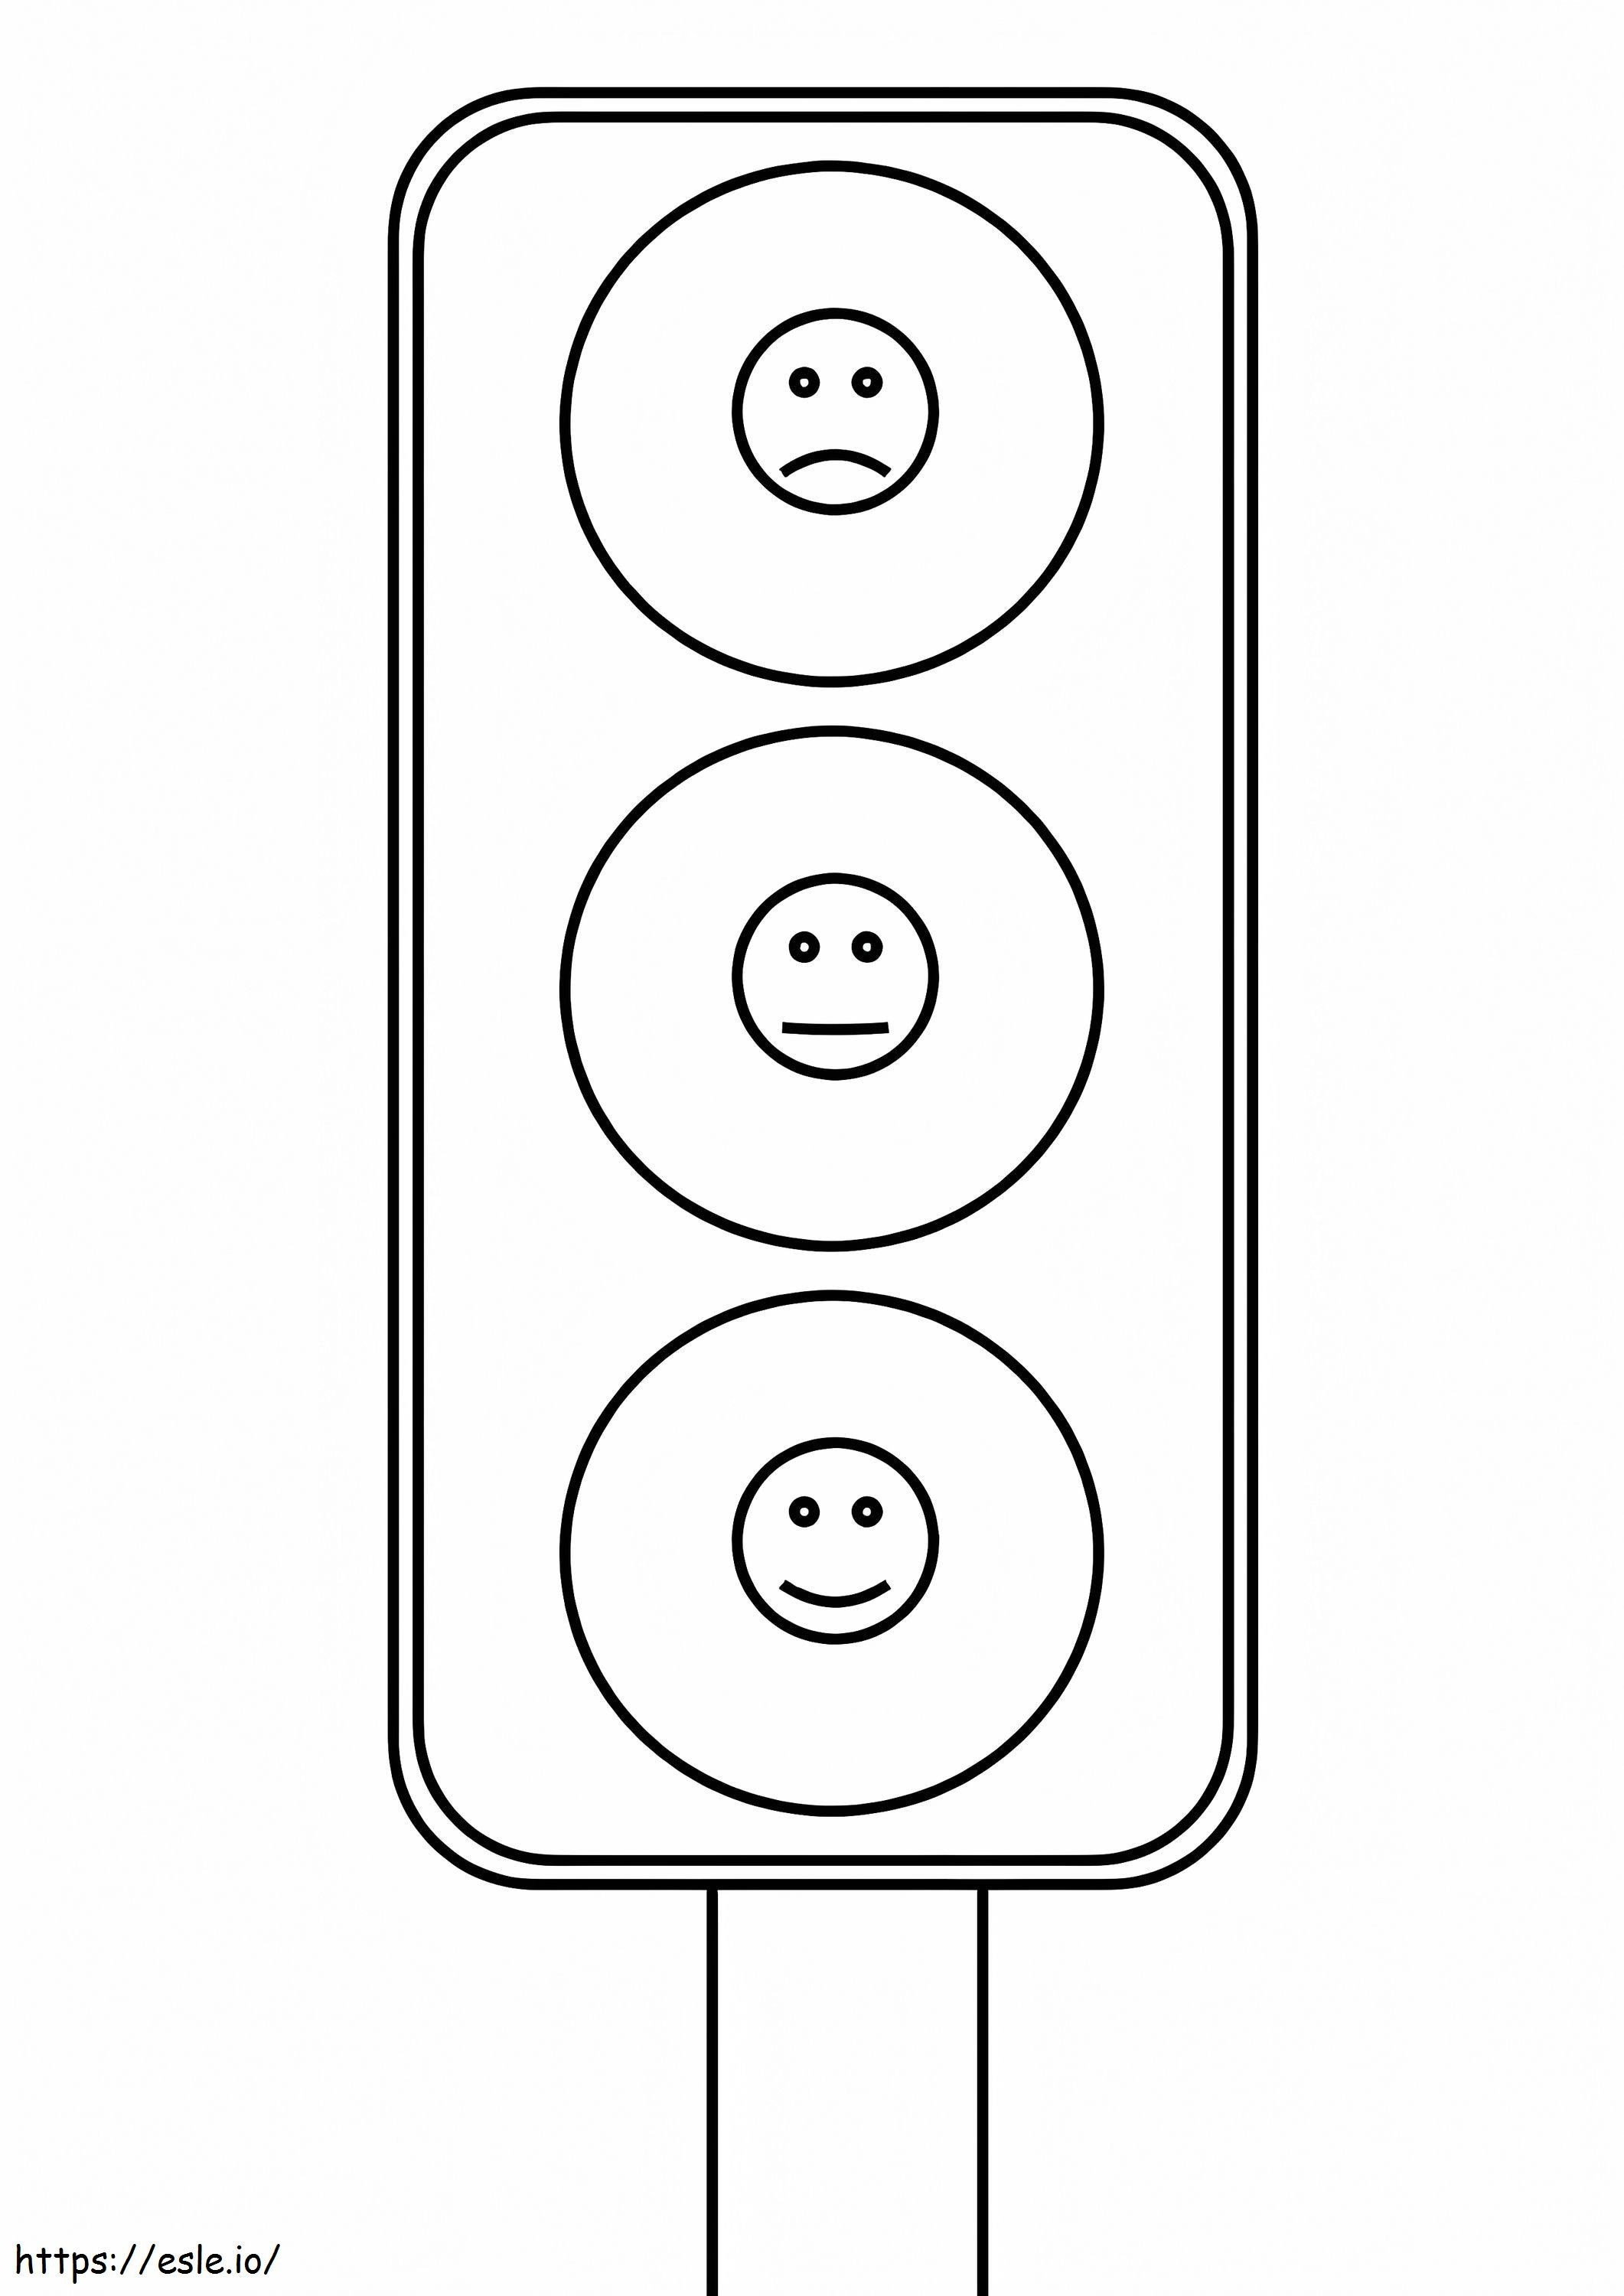 Emoji Traffic Light coloring page